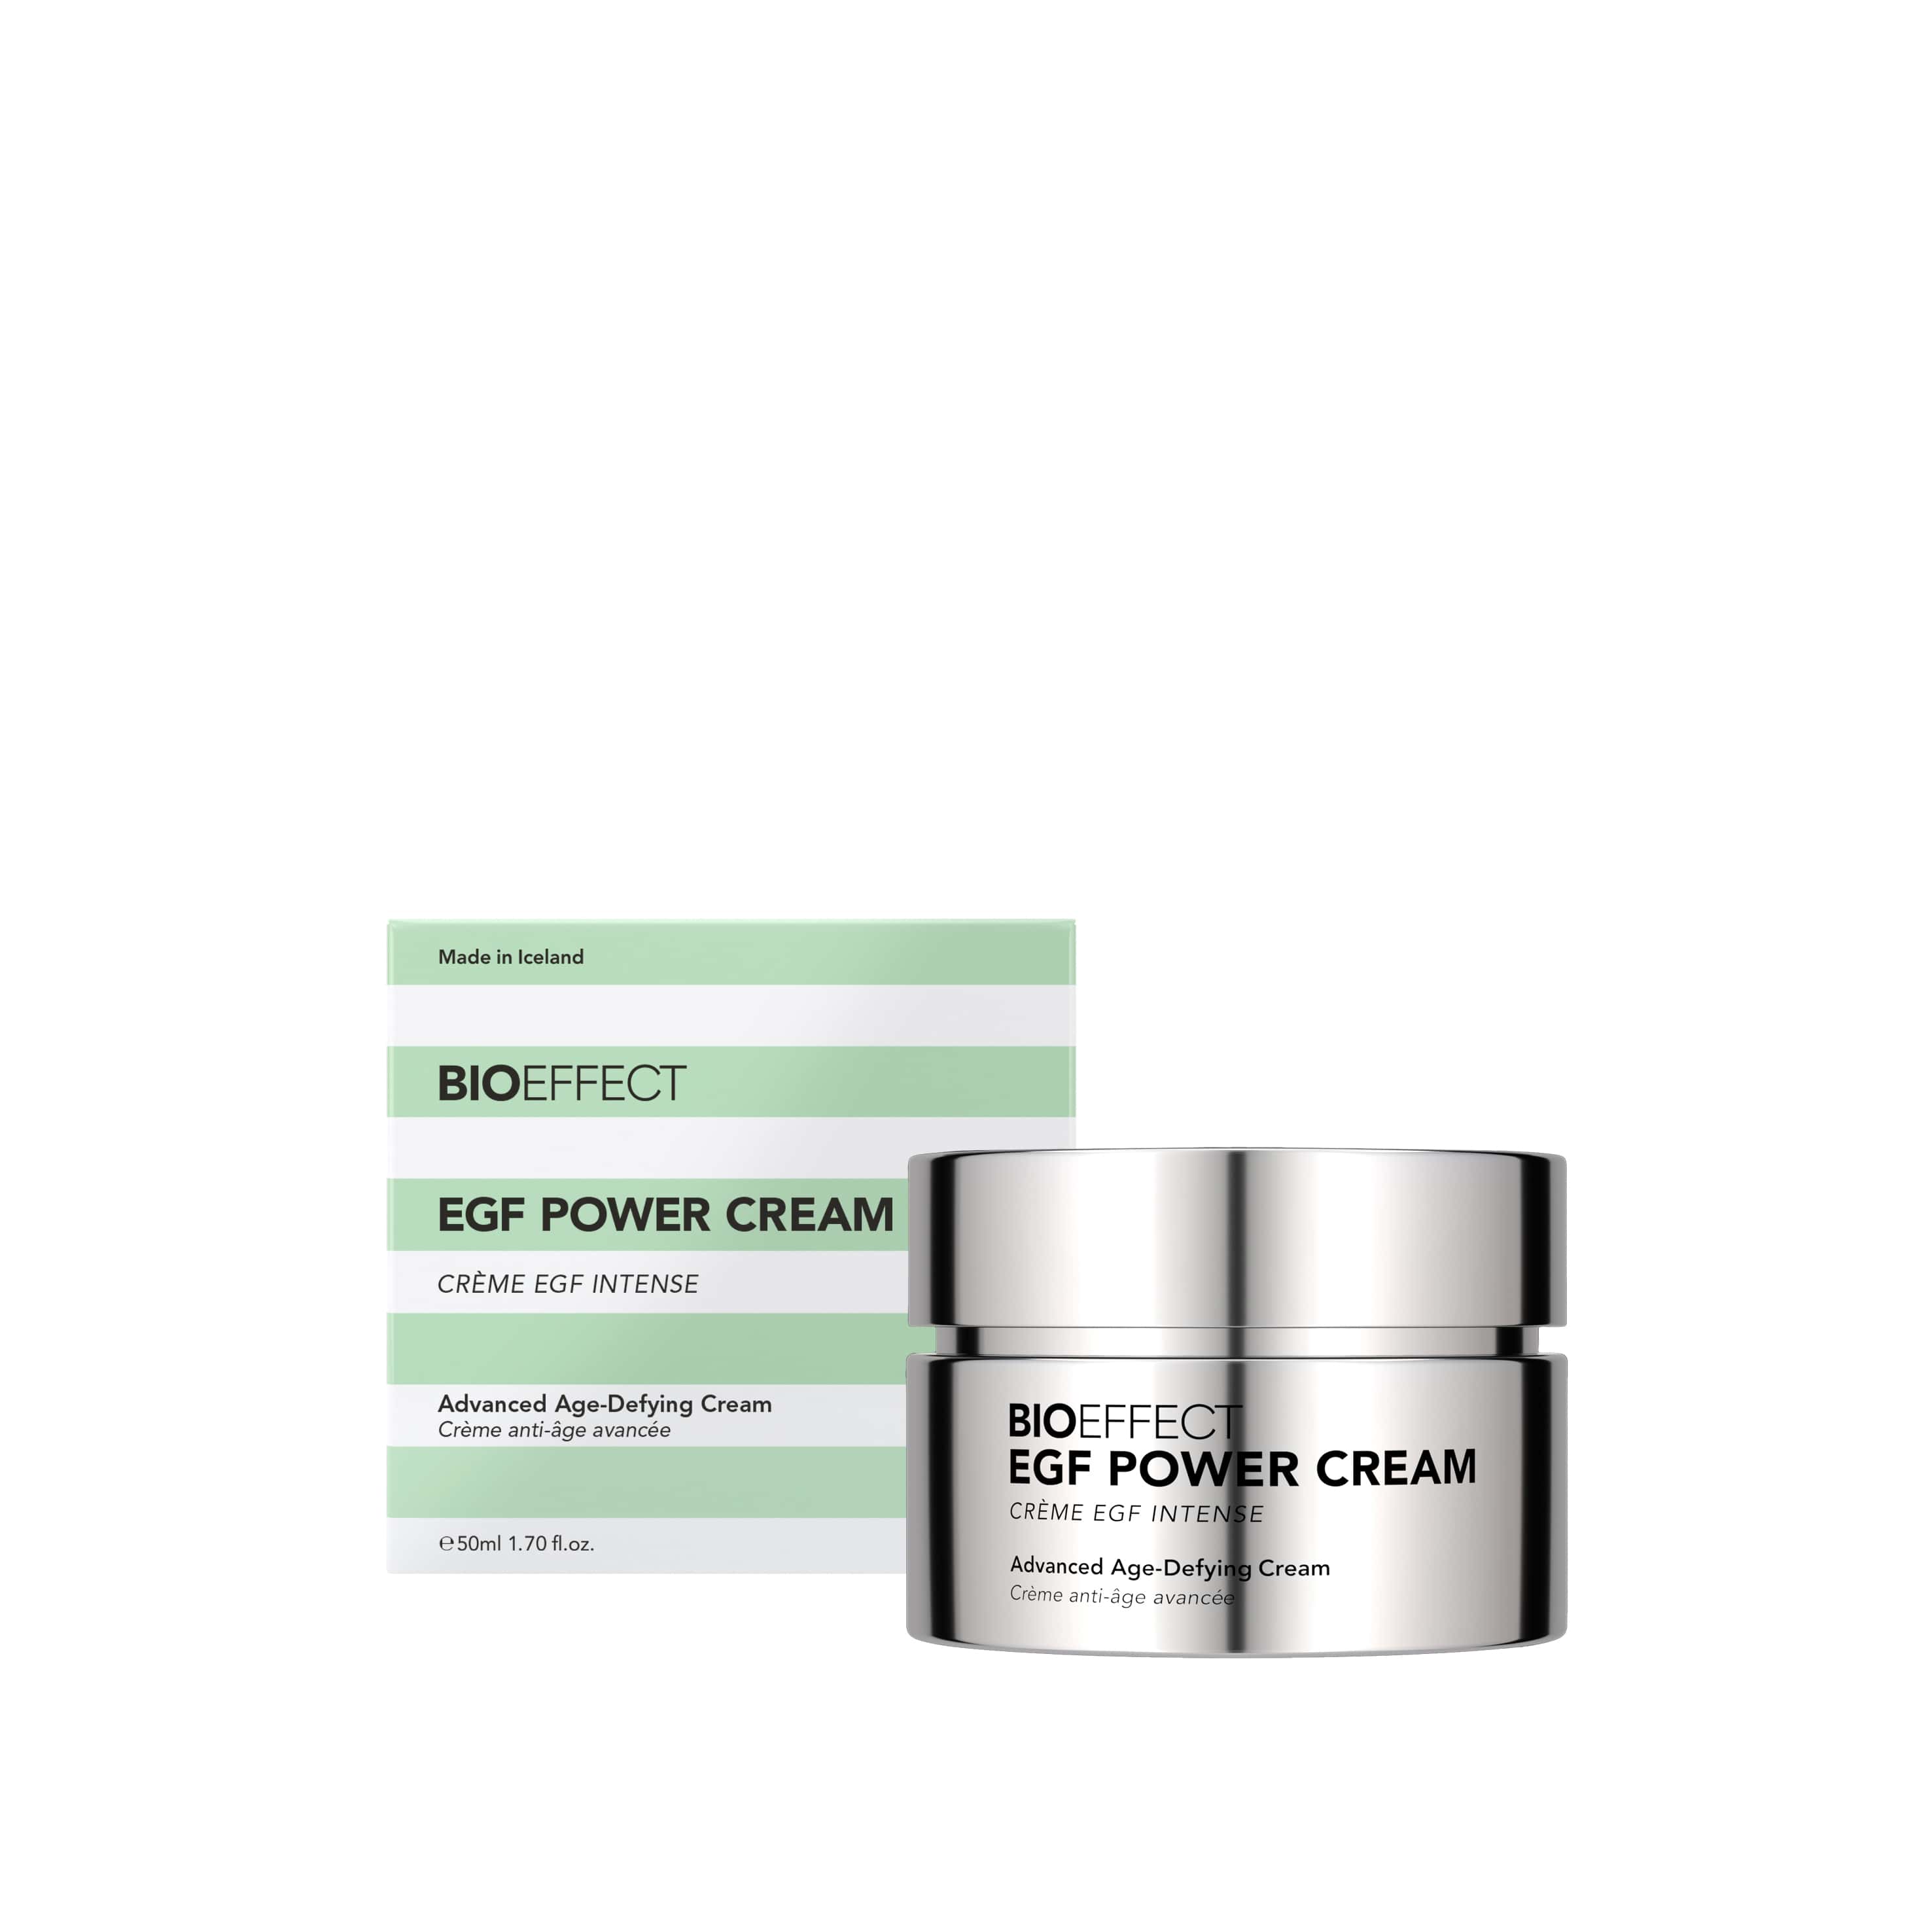 EGF Power Cream_NEW_BOX + JAR _ Packshot-min